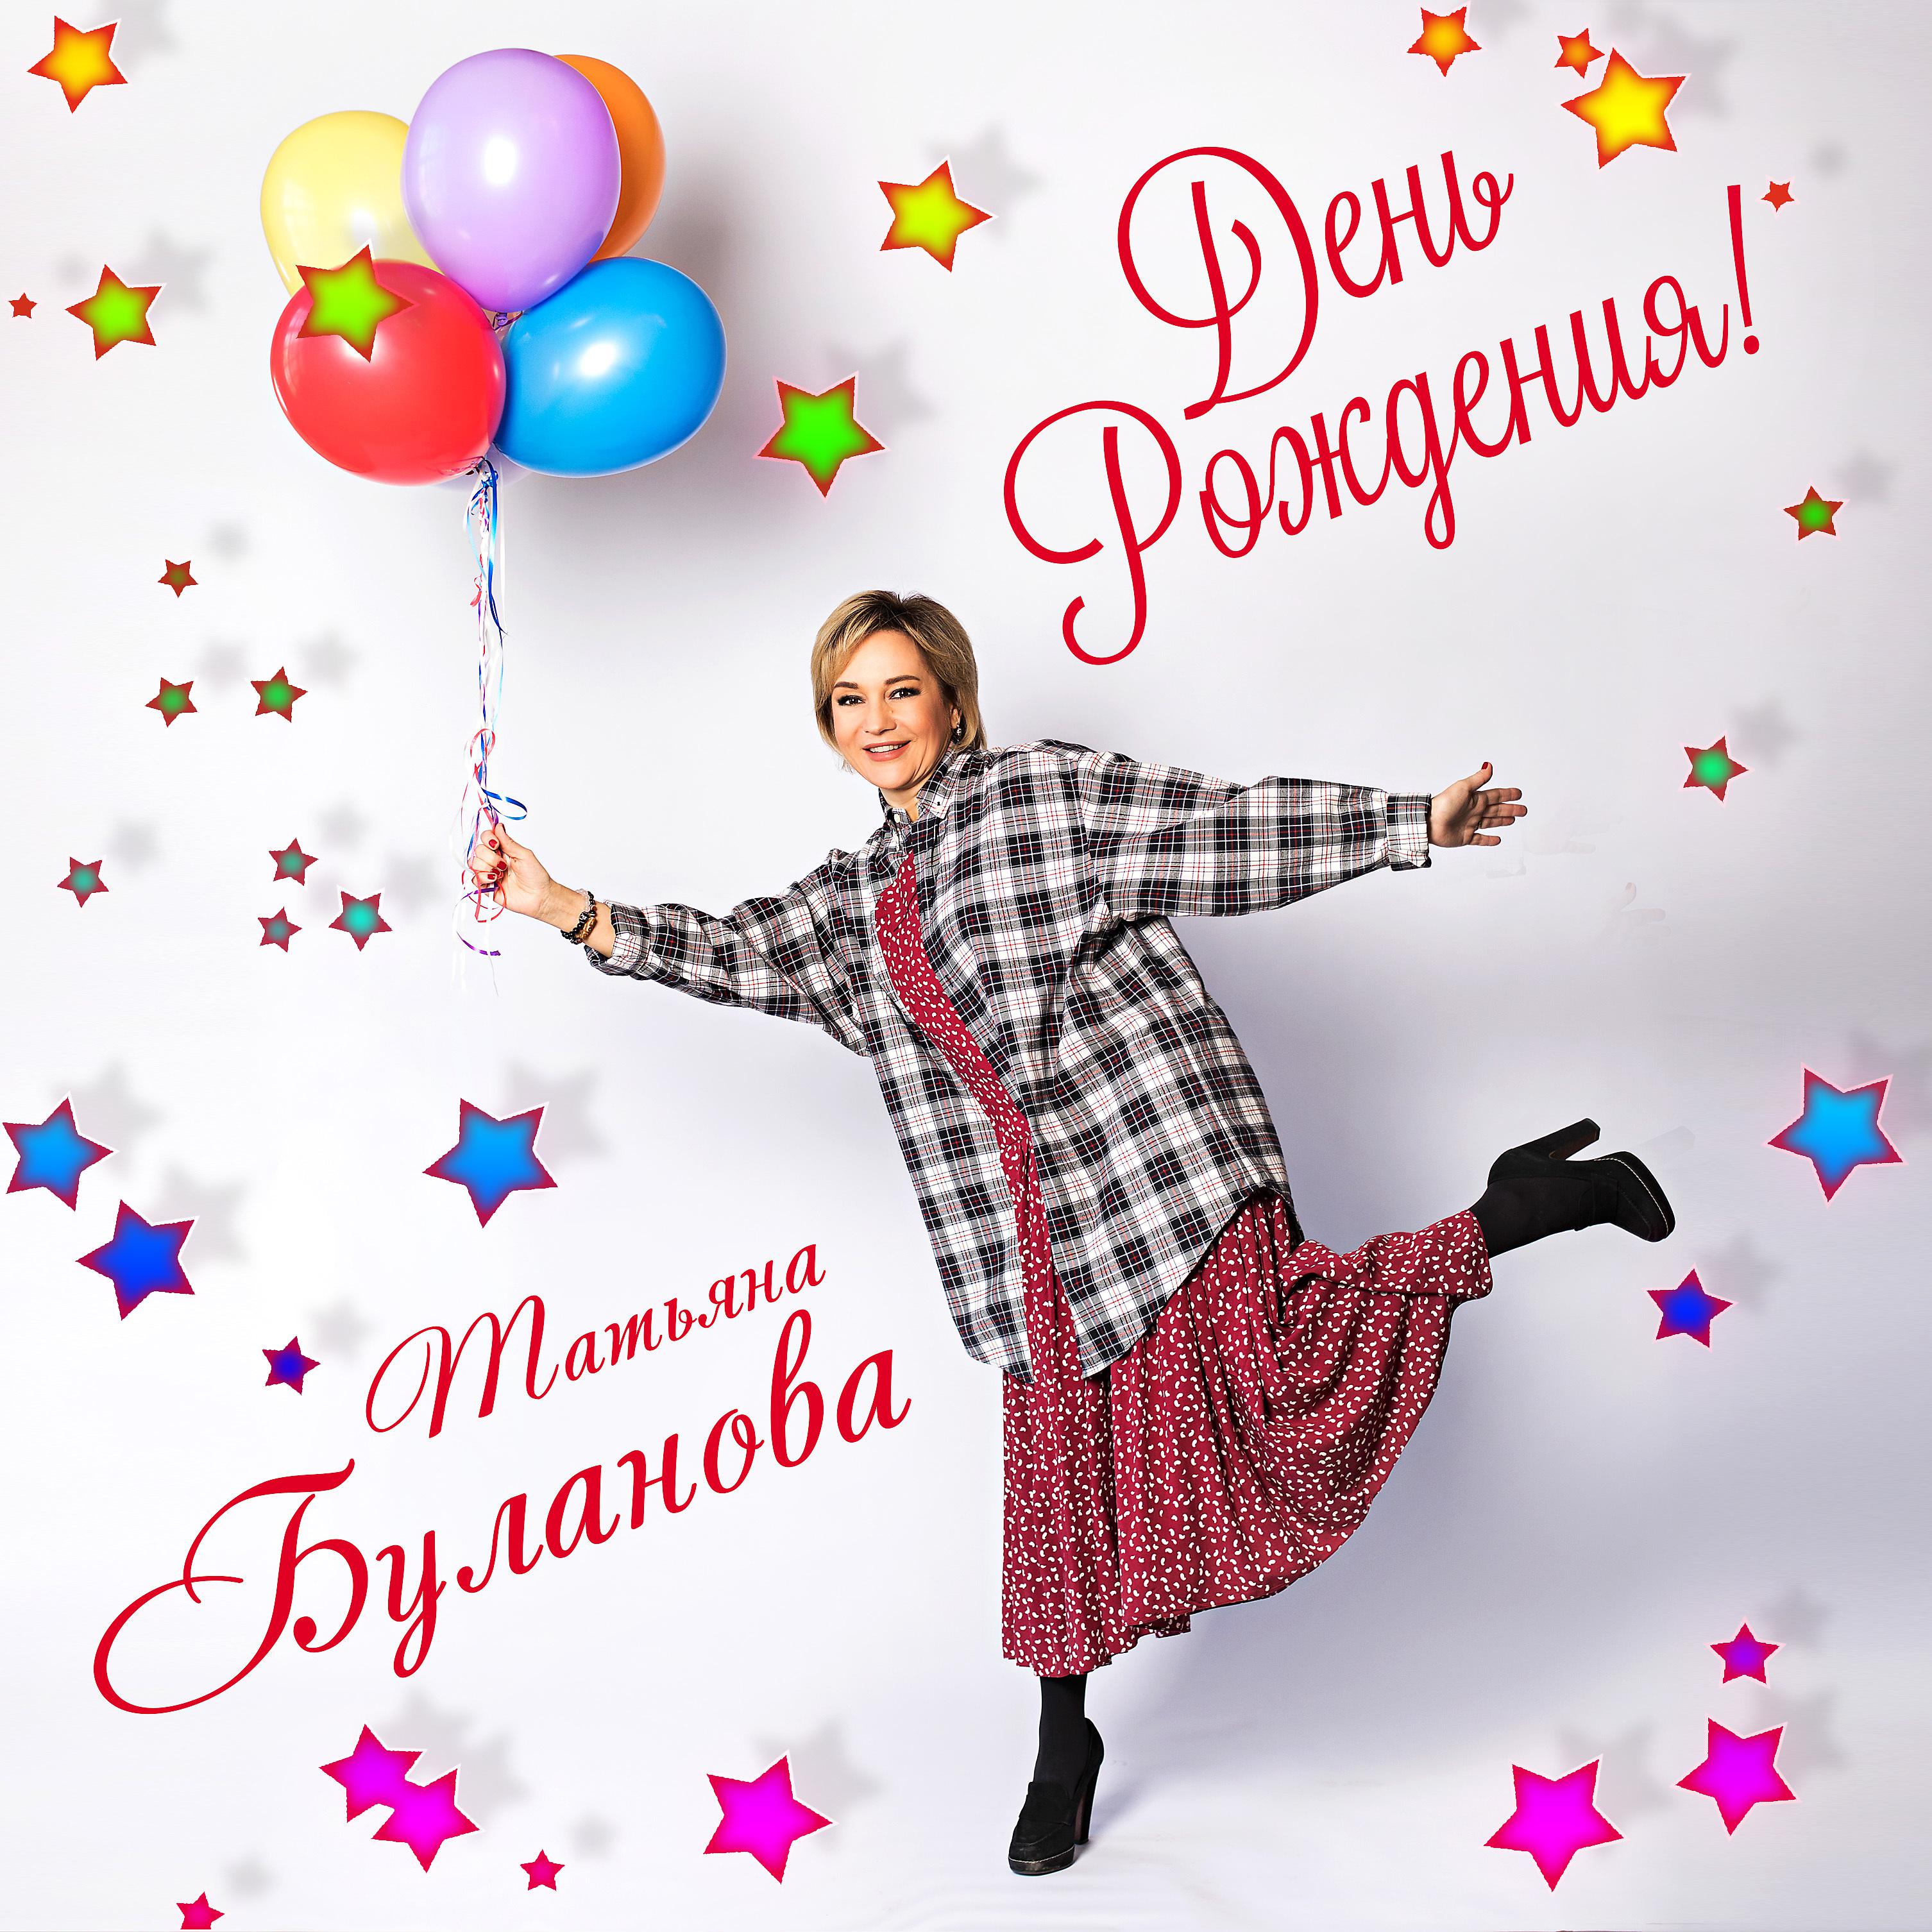 Песни на день рождение танцевальные современные. Таня Буланова с днем рождения.